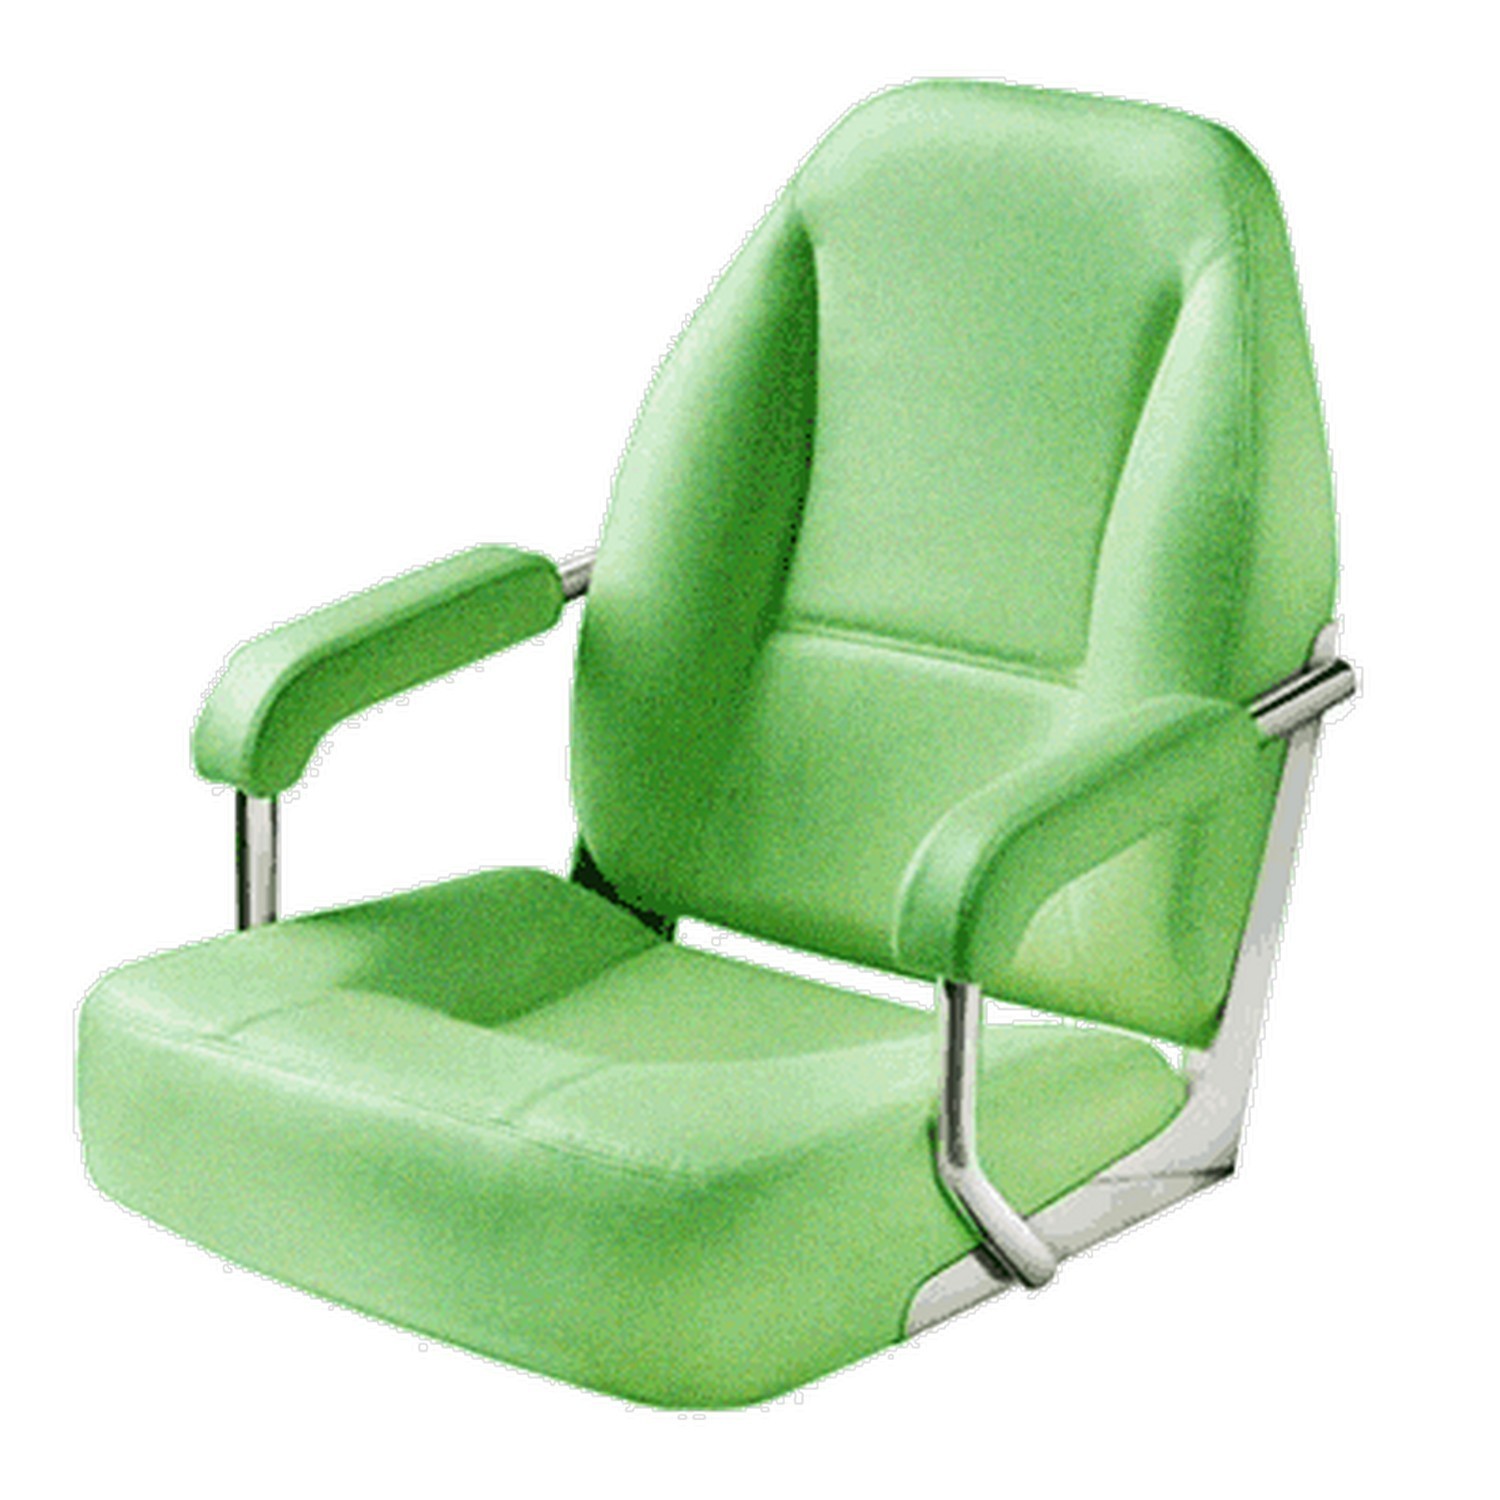 Судовое кресло без отделки Vetus V-quipment Master CHFASU 690 x 630 x 595 мм поставляется без стойки